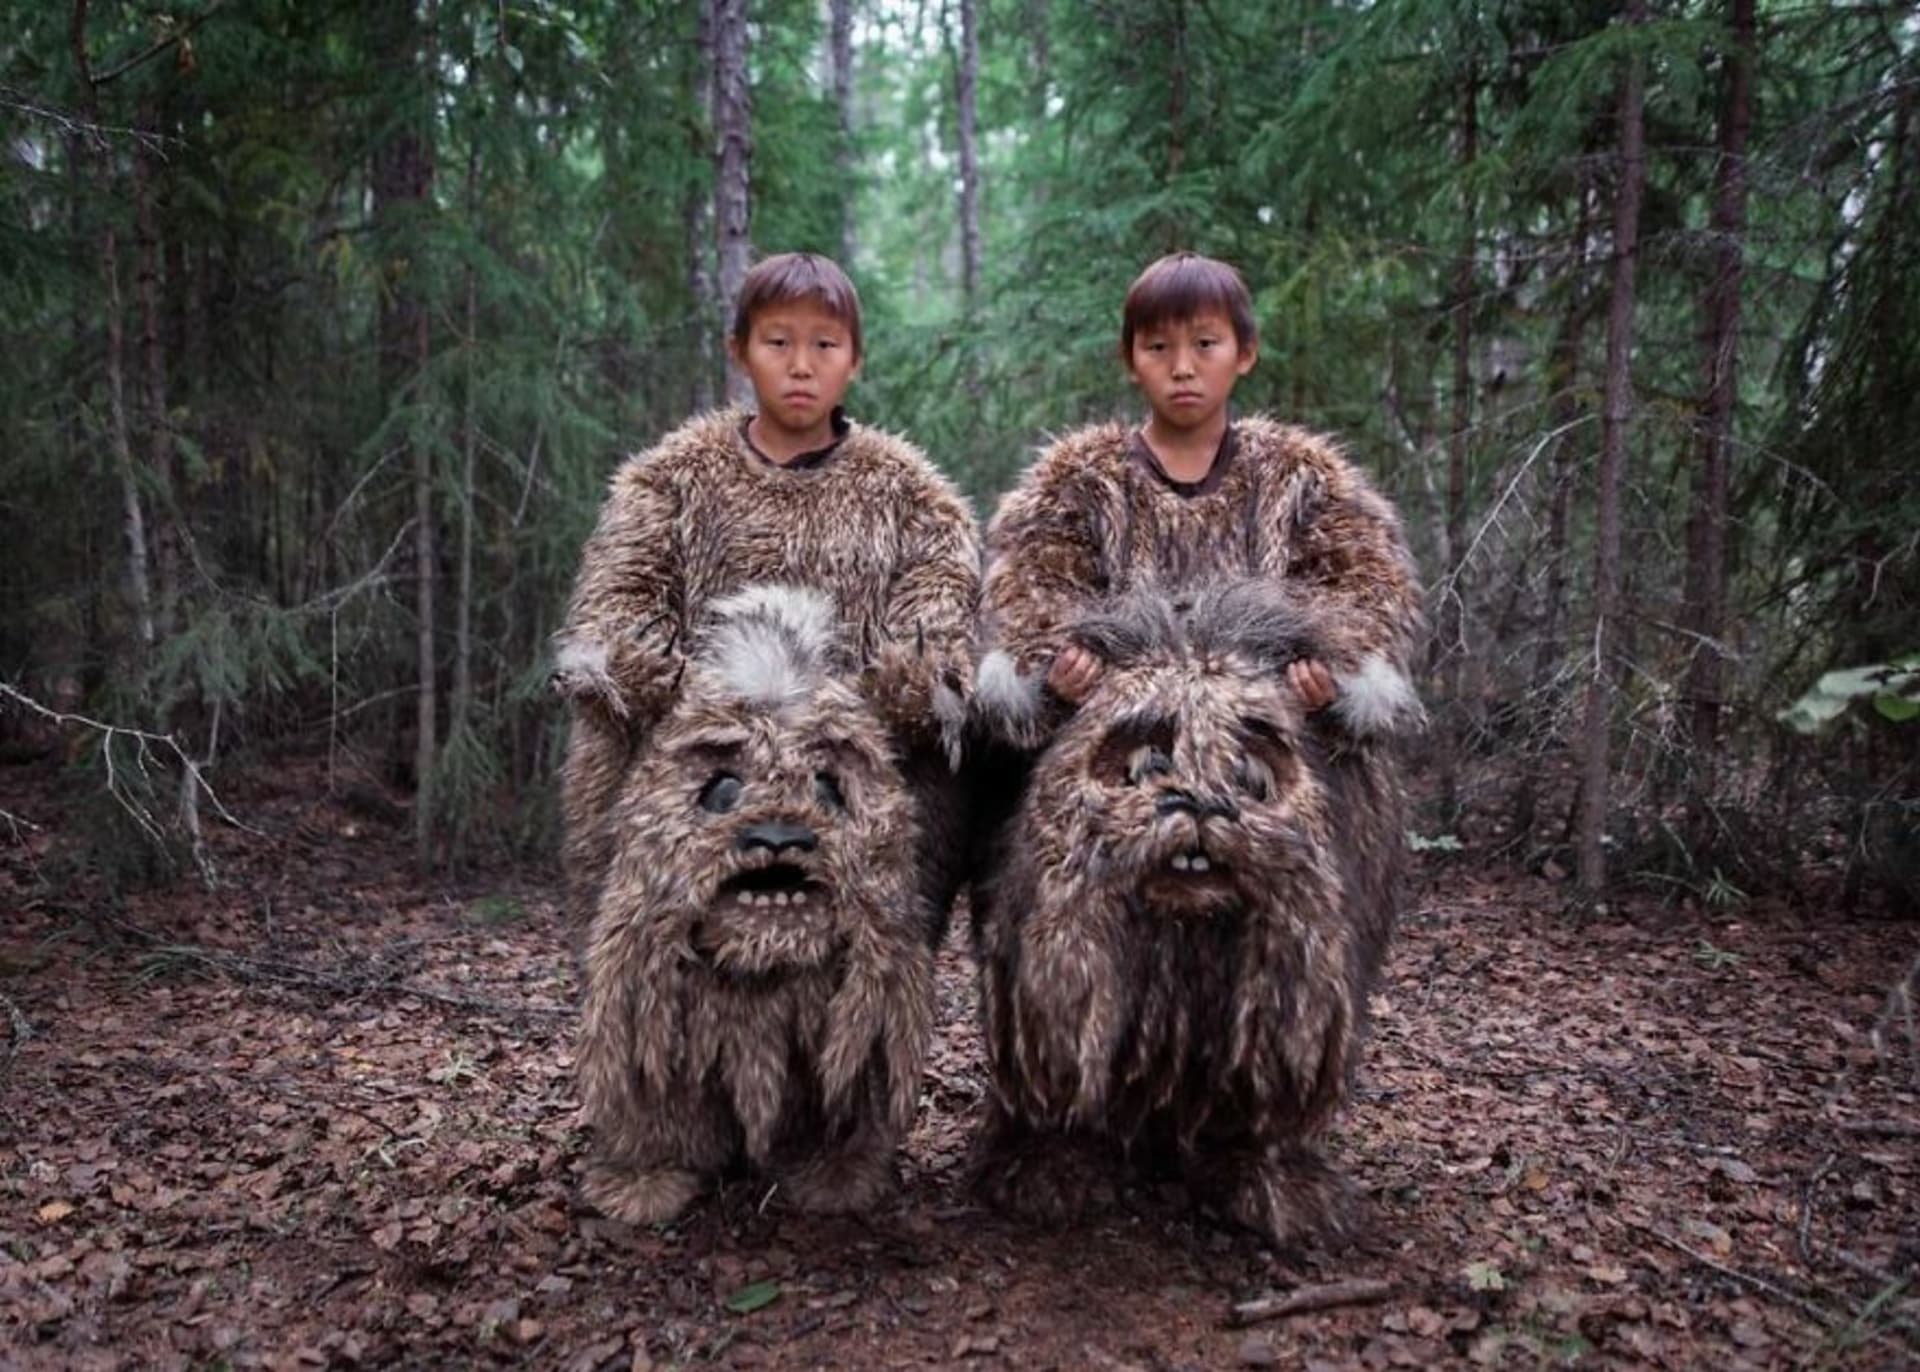 Z natáčení pohádky Bejberikýn. Chlapci Semjon a Štěpán byli v oblecích mytických zvířat žijících v lese